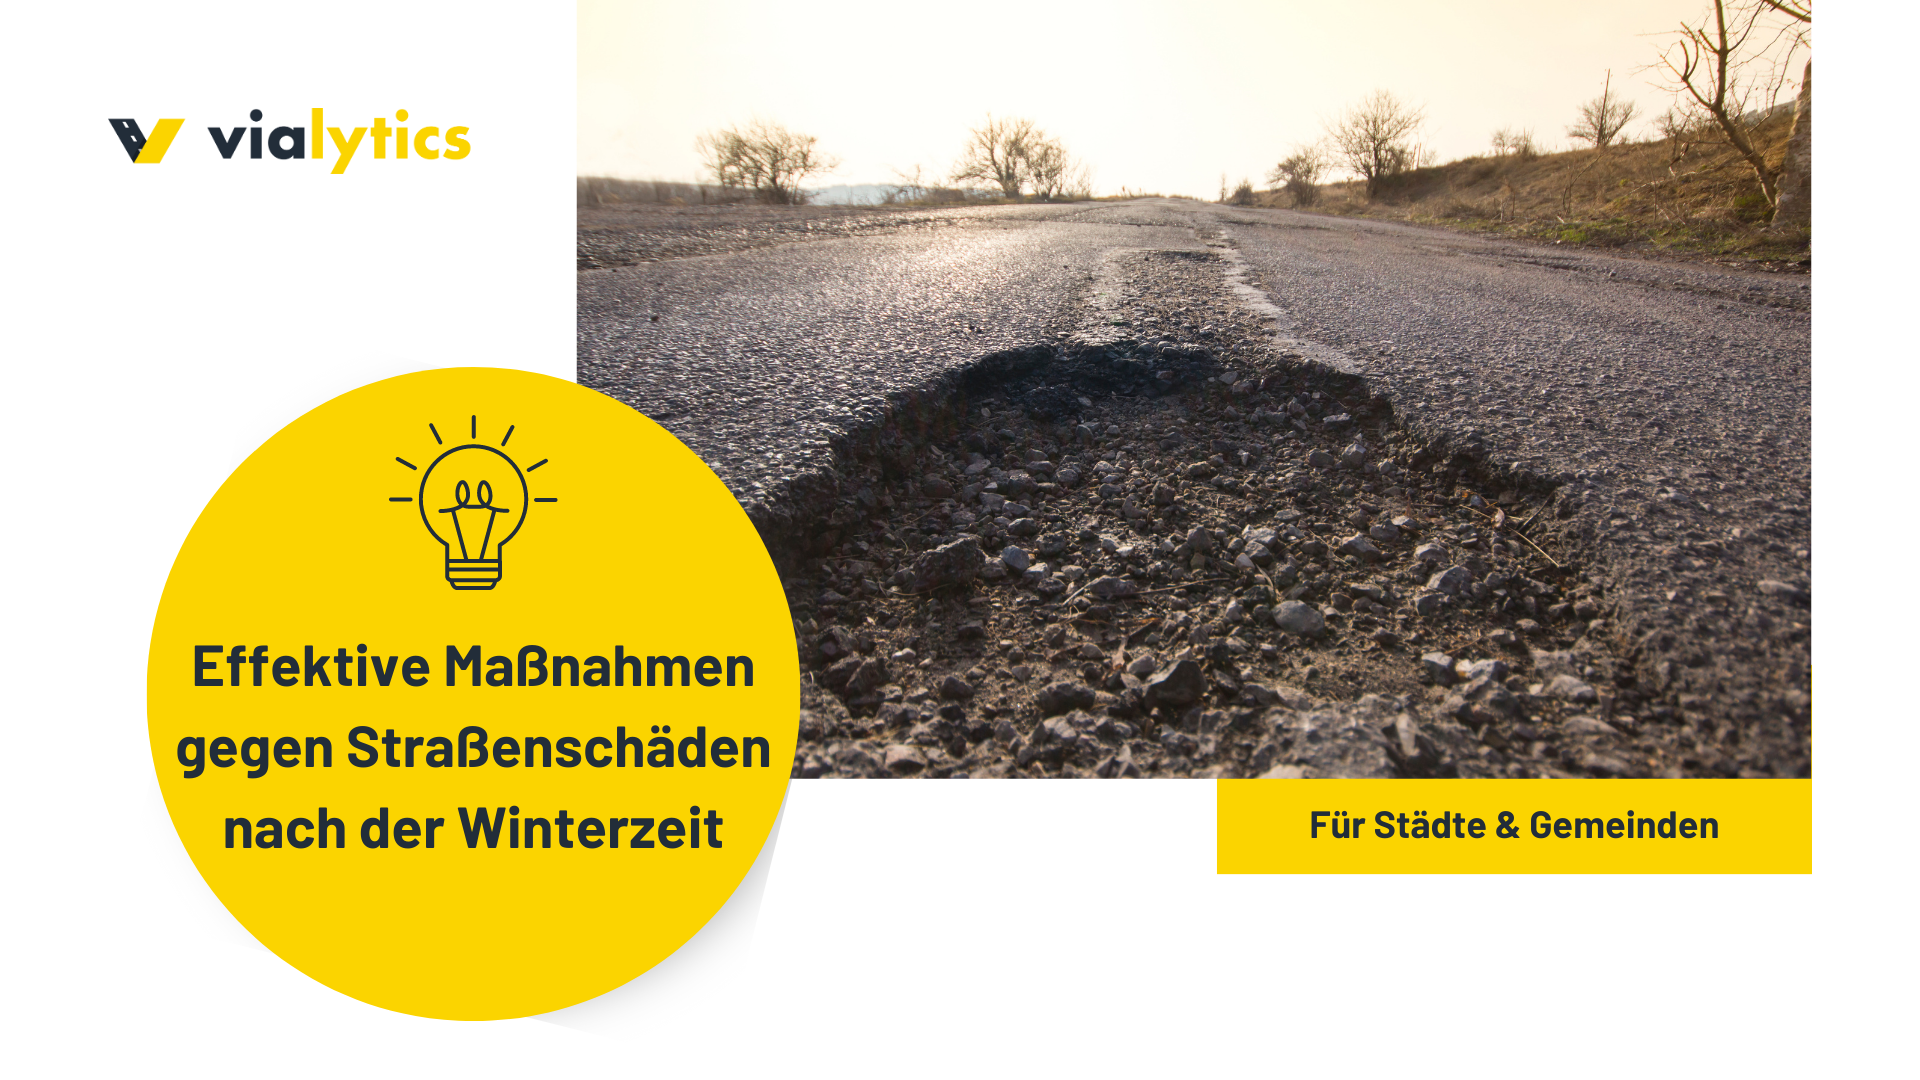 Mit effektiven Maßnahmen können Städte und Gemeinden Straßenschäden nach der Winterzeit minimieren.